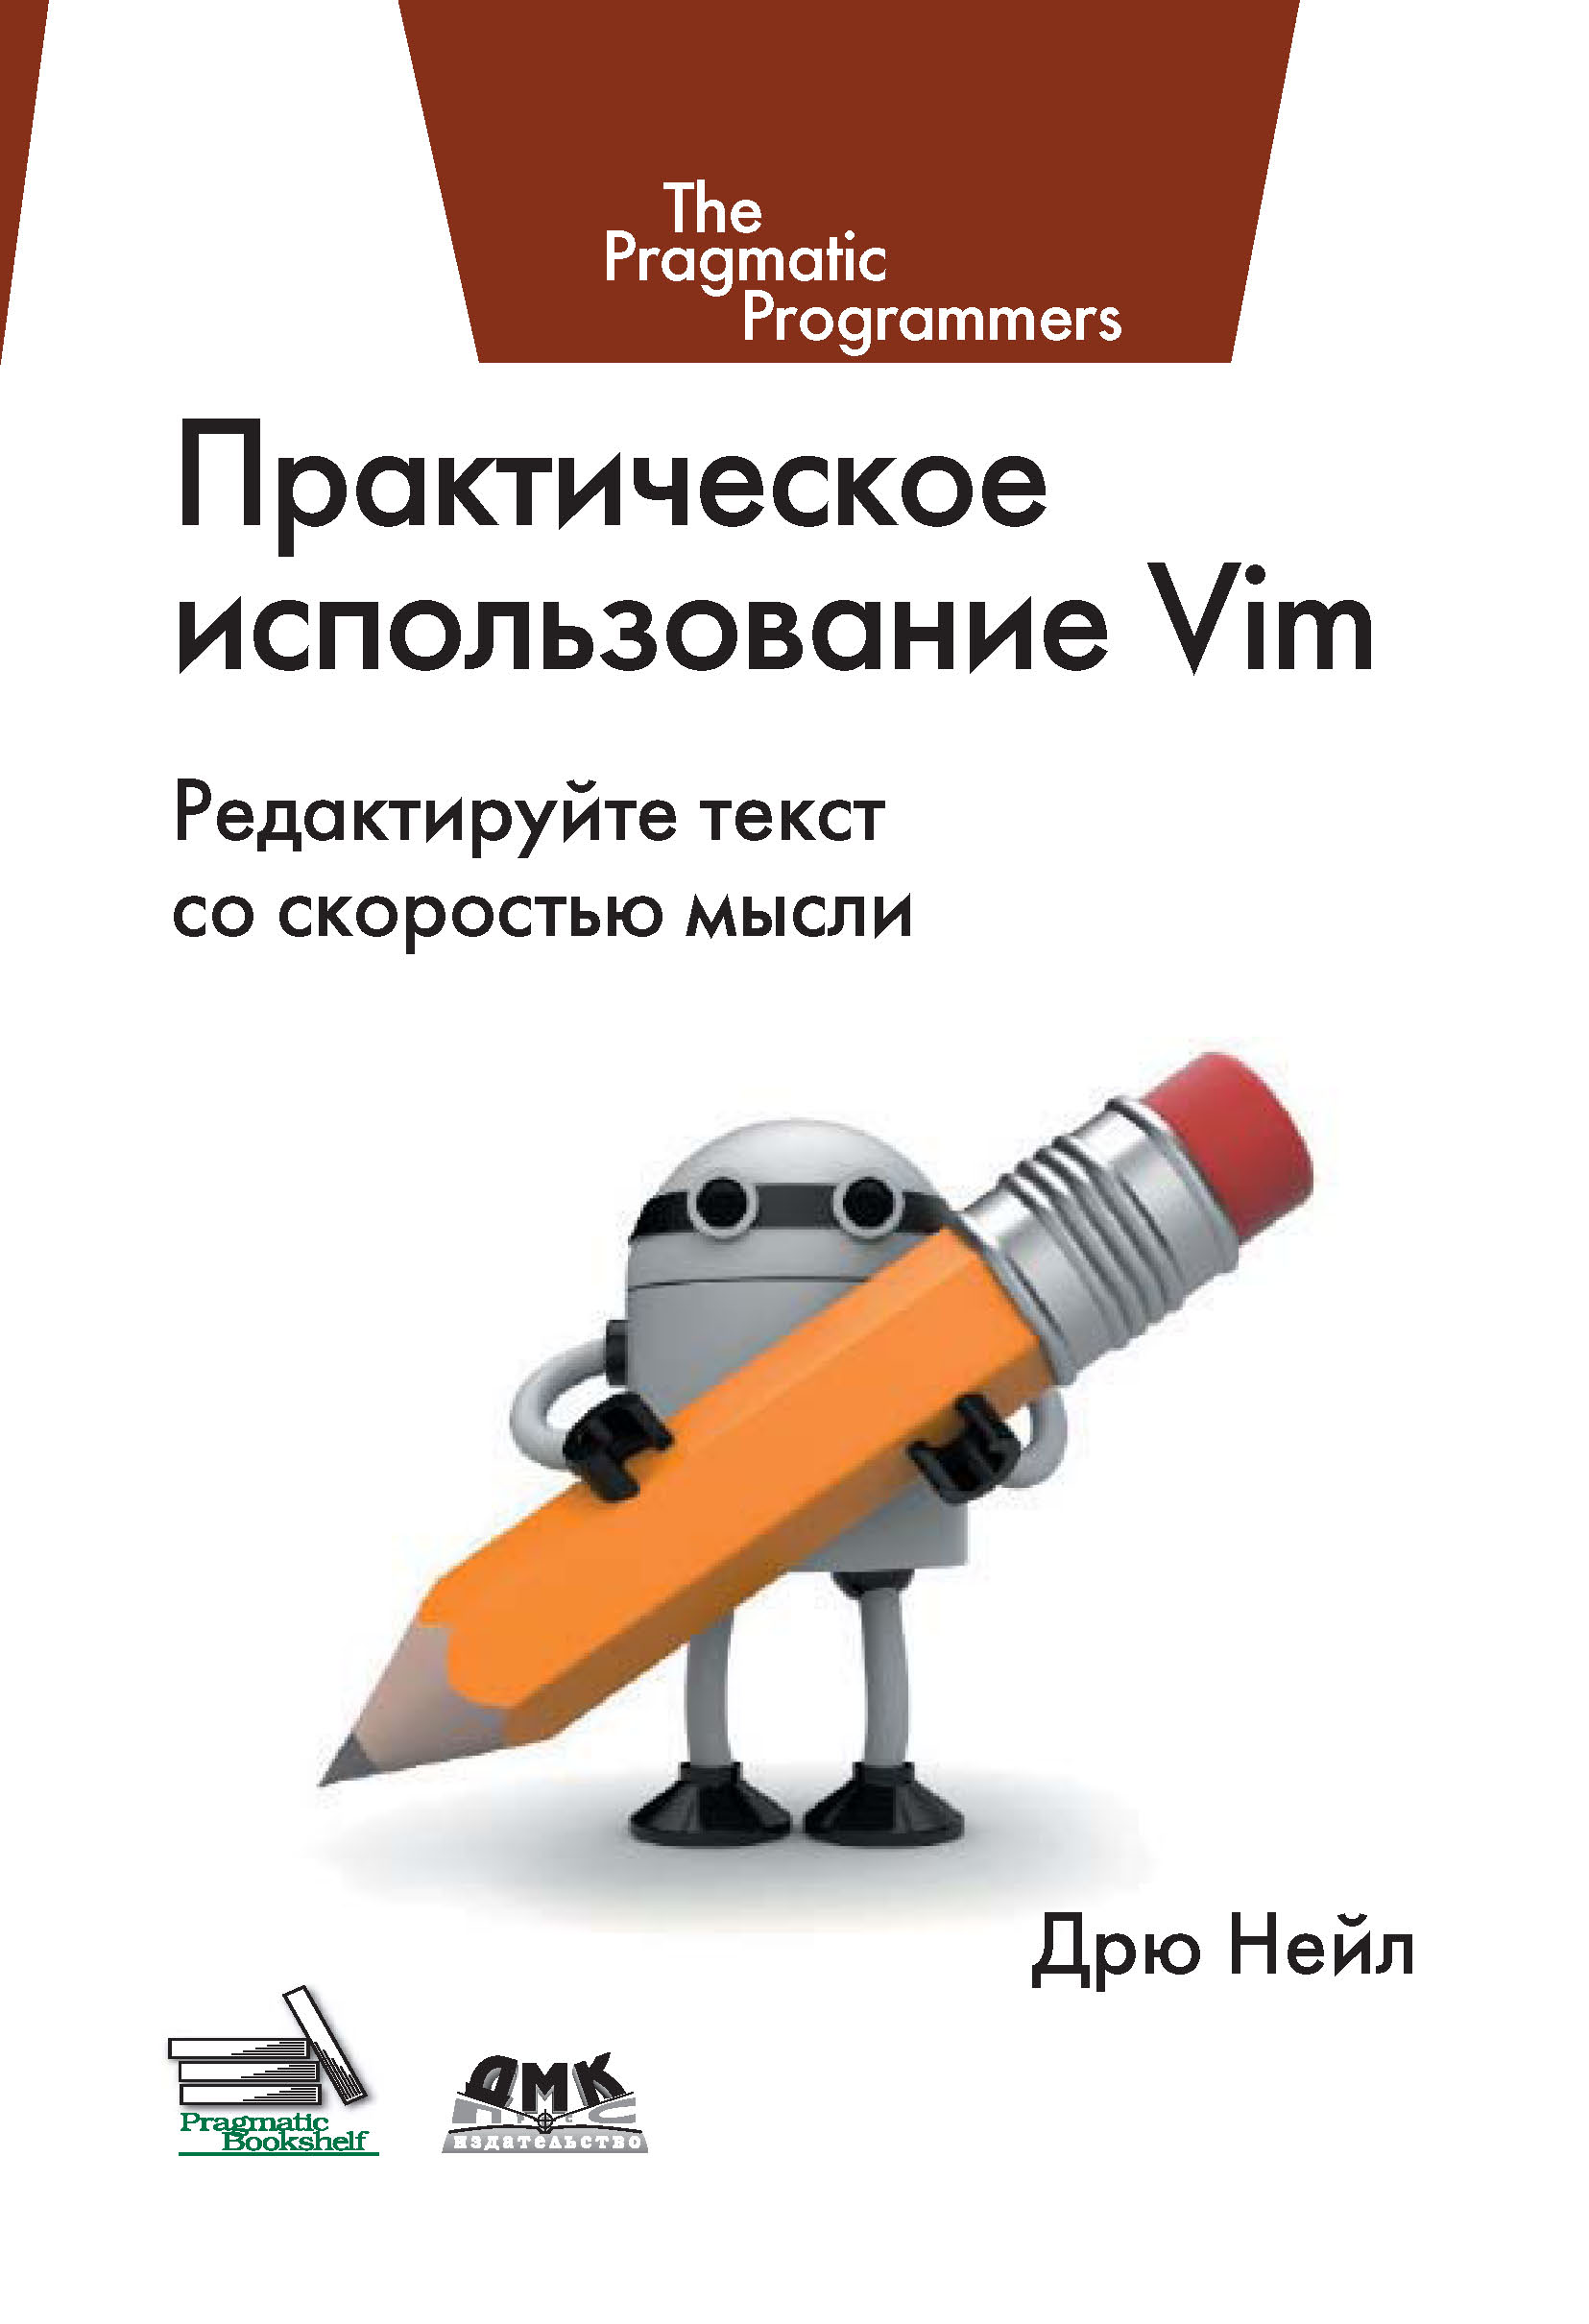 Книга The Pragmatic Programmers Практическое использование Vim созданная Дрю Нейл может относится к жанру зарубежная компьютерная литература, программы. Стоимость электронной книги Практическое использование Vim с идентификатором 10014985 составляет 439.00 руб.